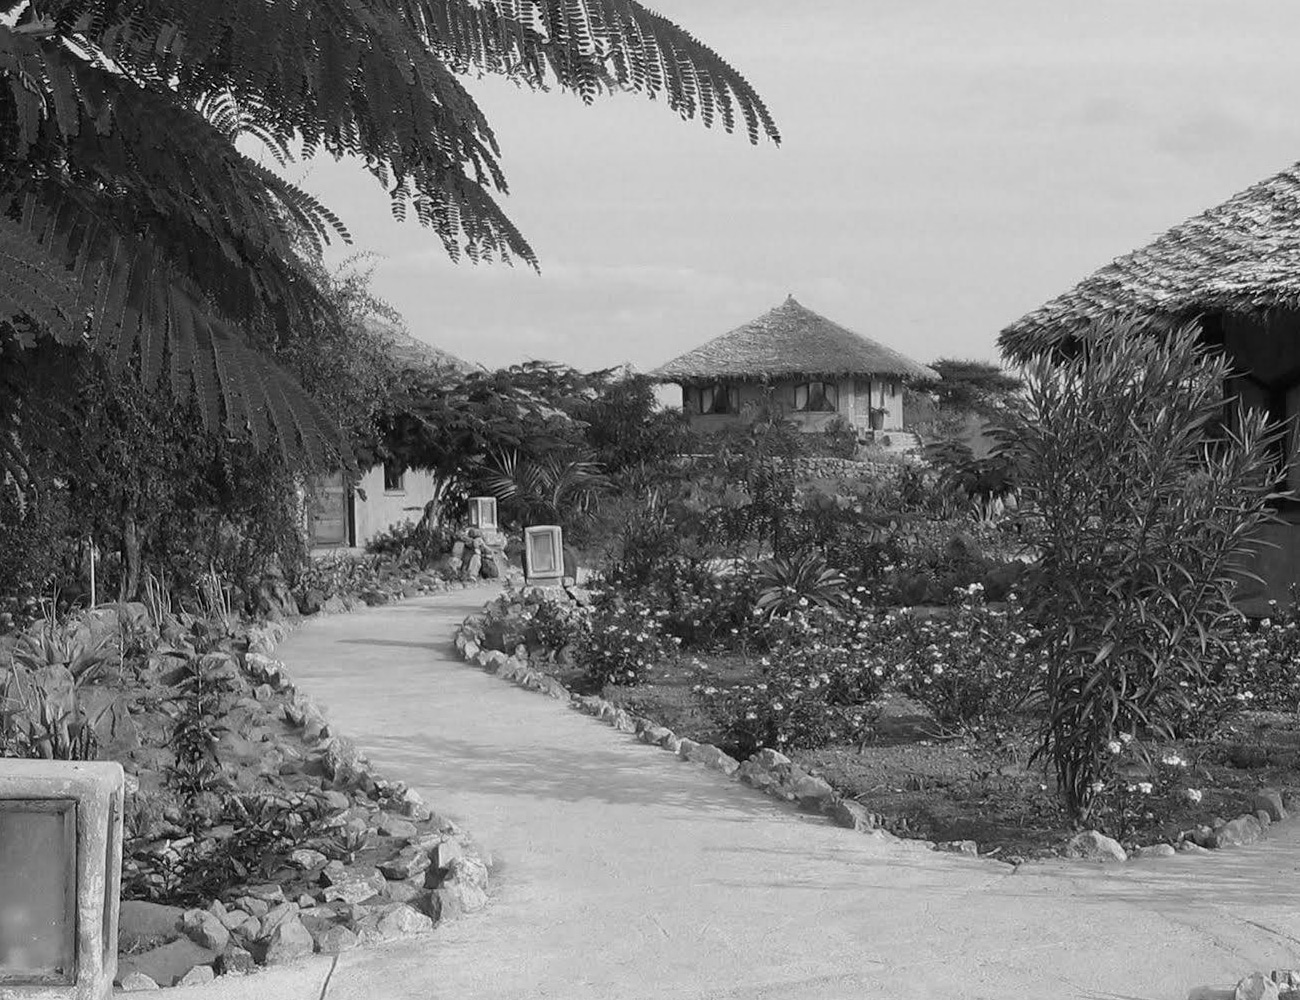 Surroundings of Kia Lodge in Tanzania